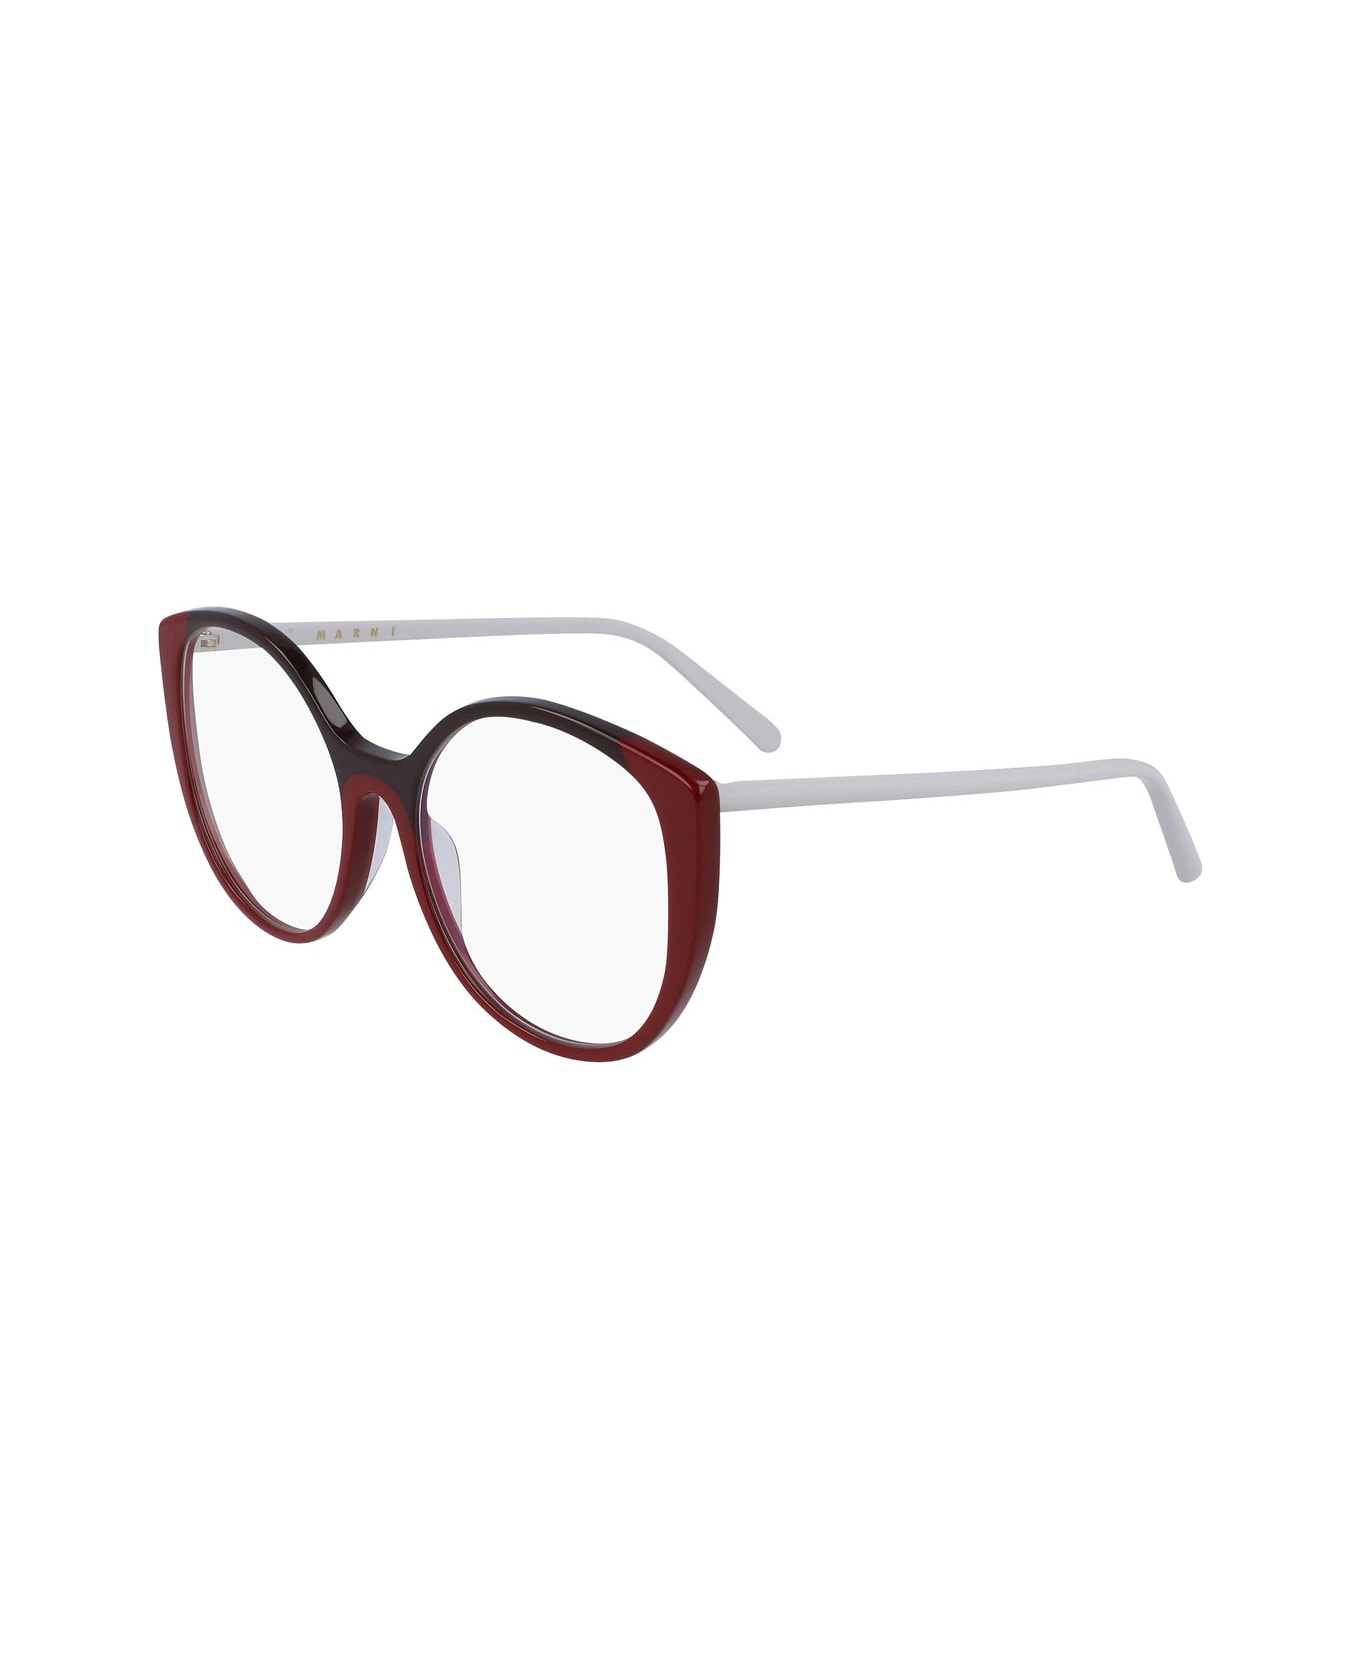 Marni Eyewear Me2637 Glasses - Rosso アイウェア